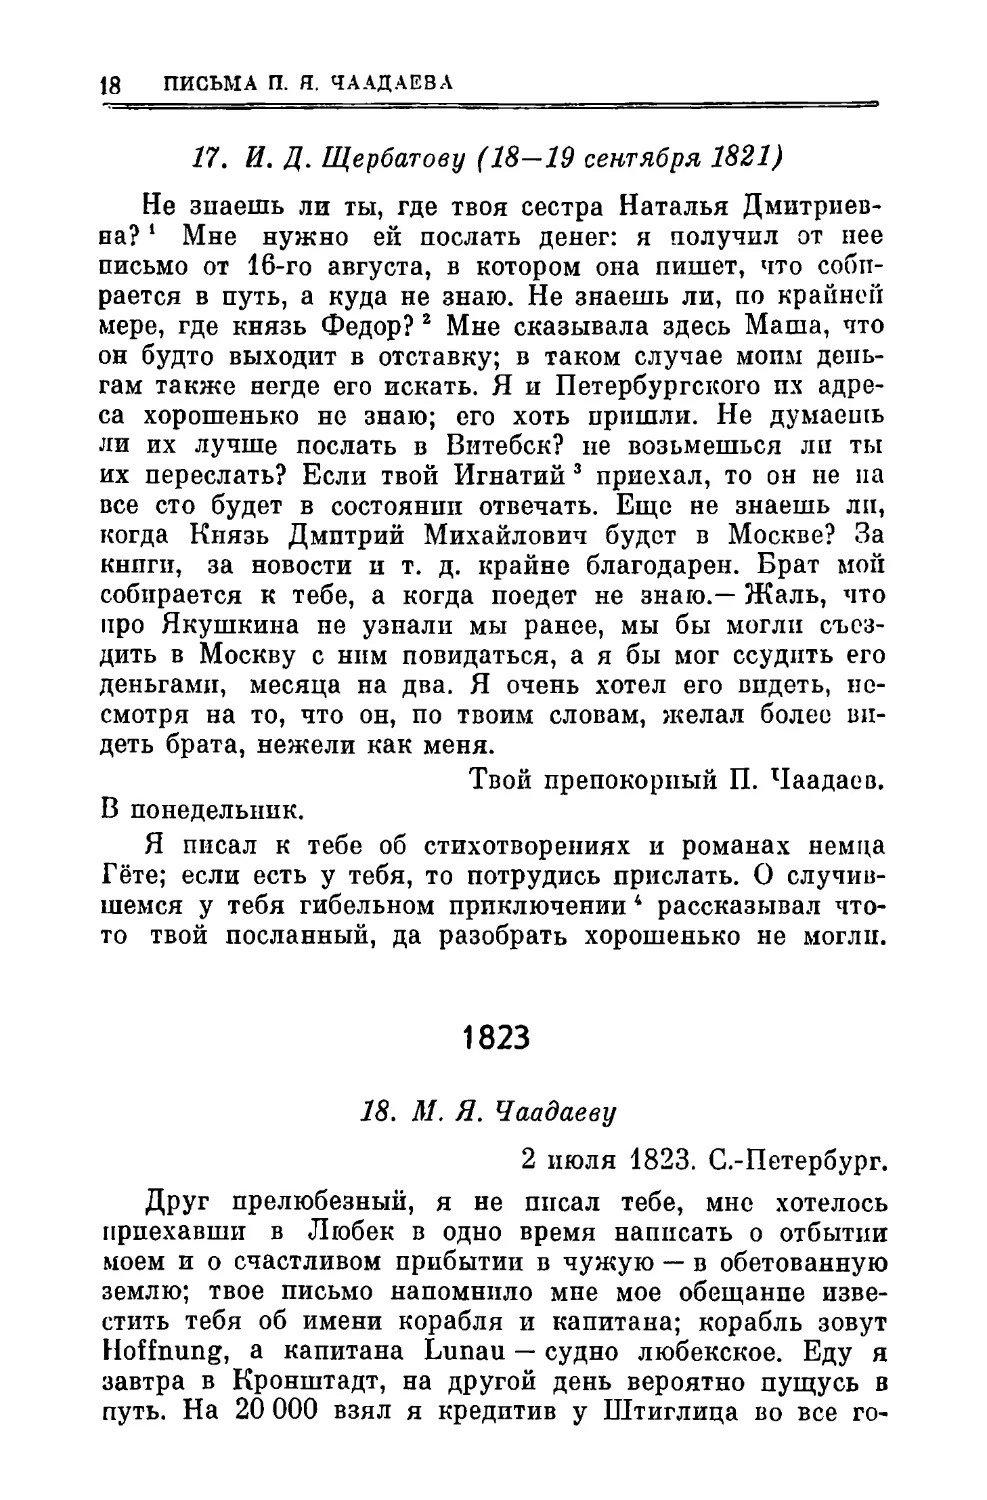 17. Щербатову И.Д. 18—19.IX
1823